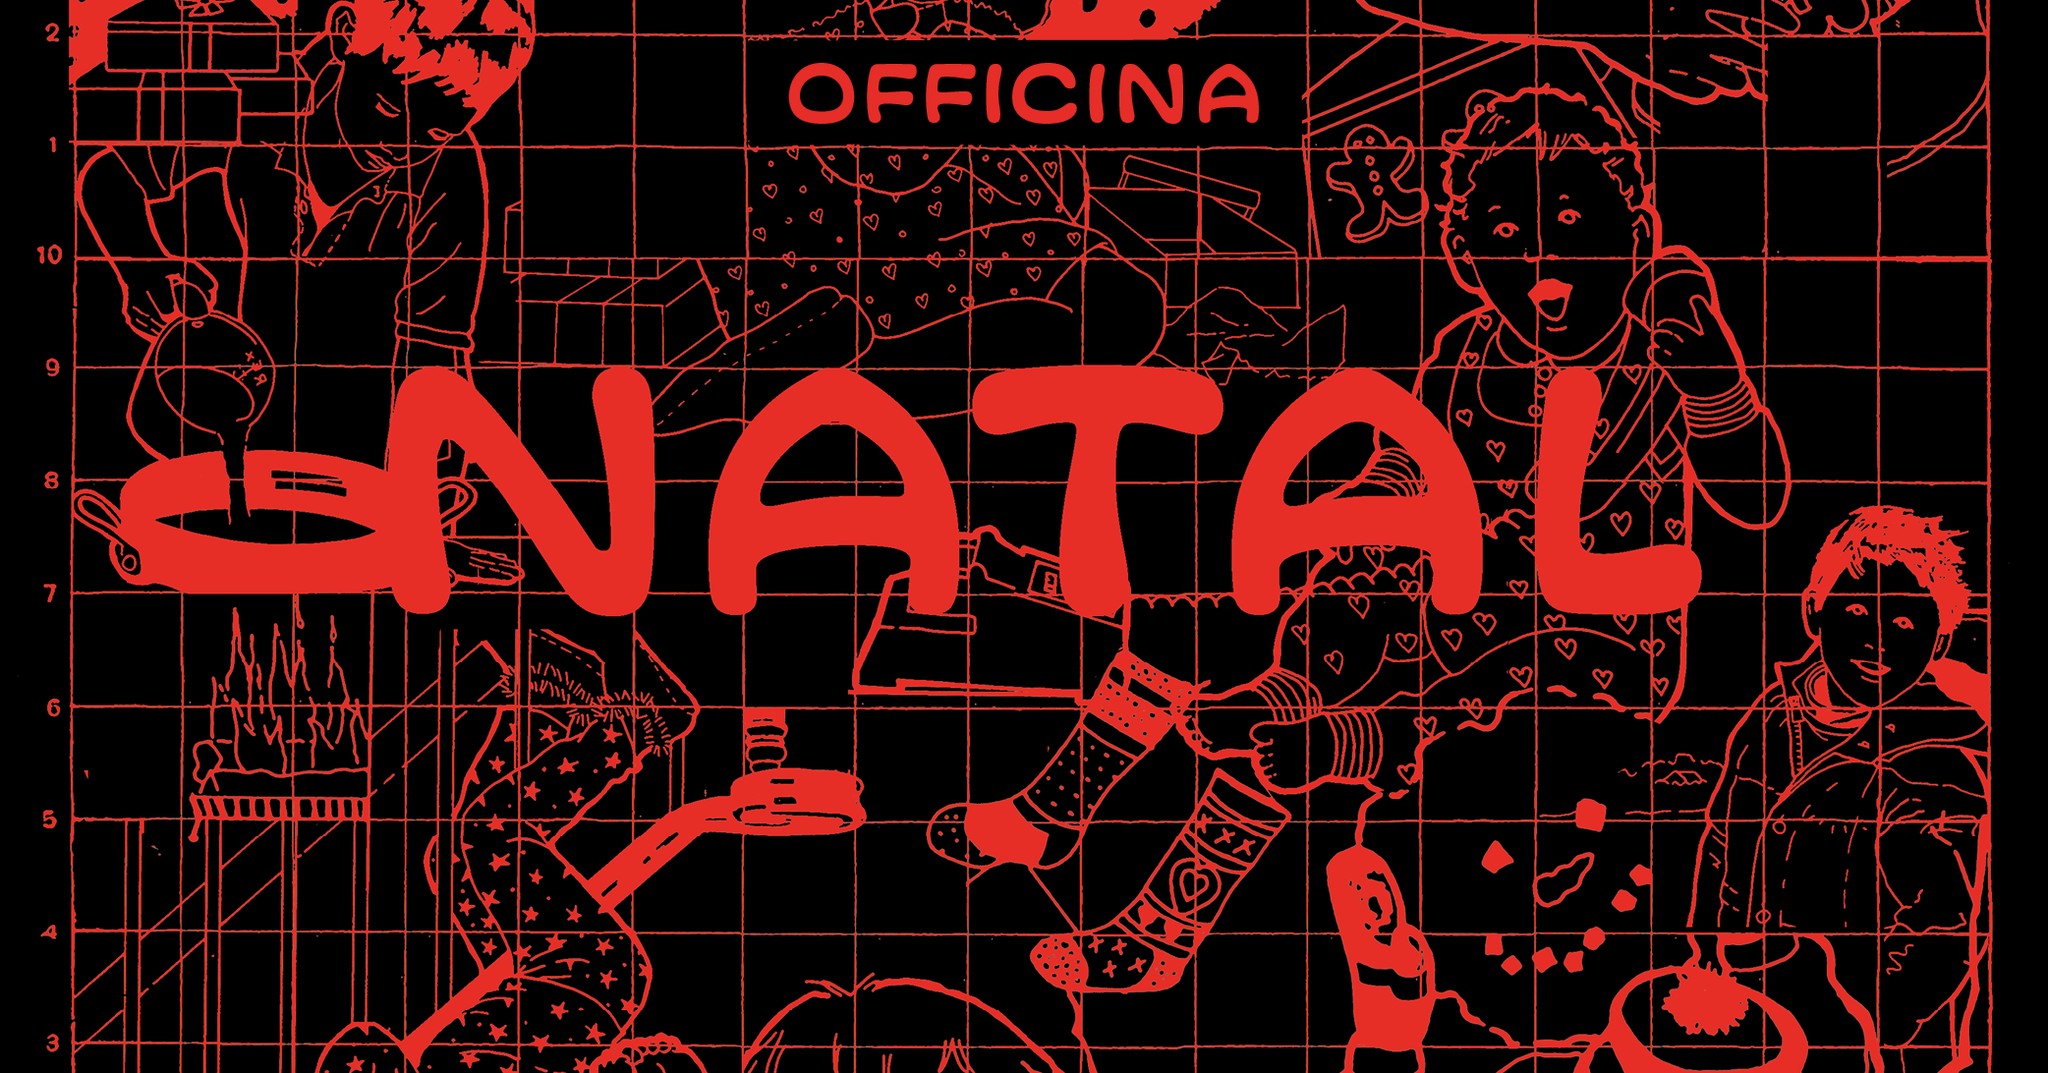 OFFICINA DE NATAL (Braga)